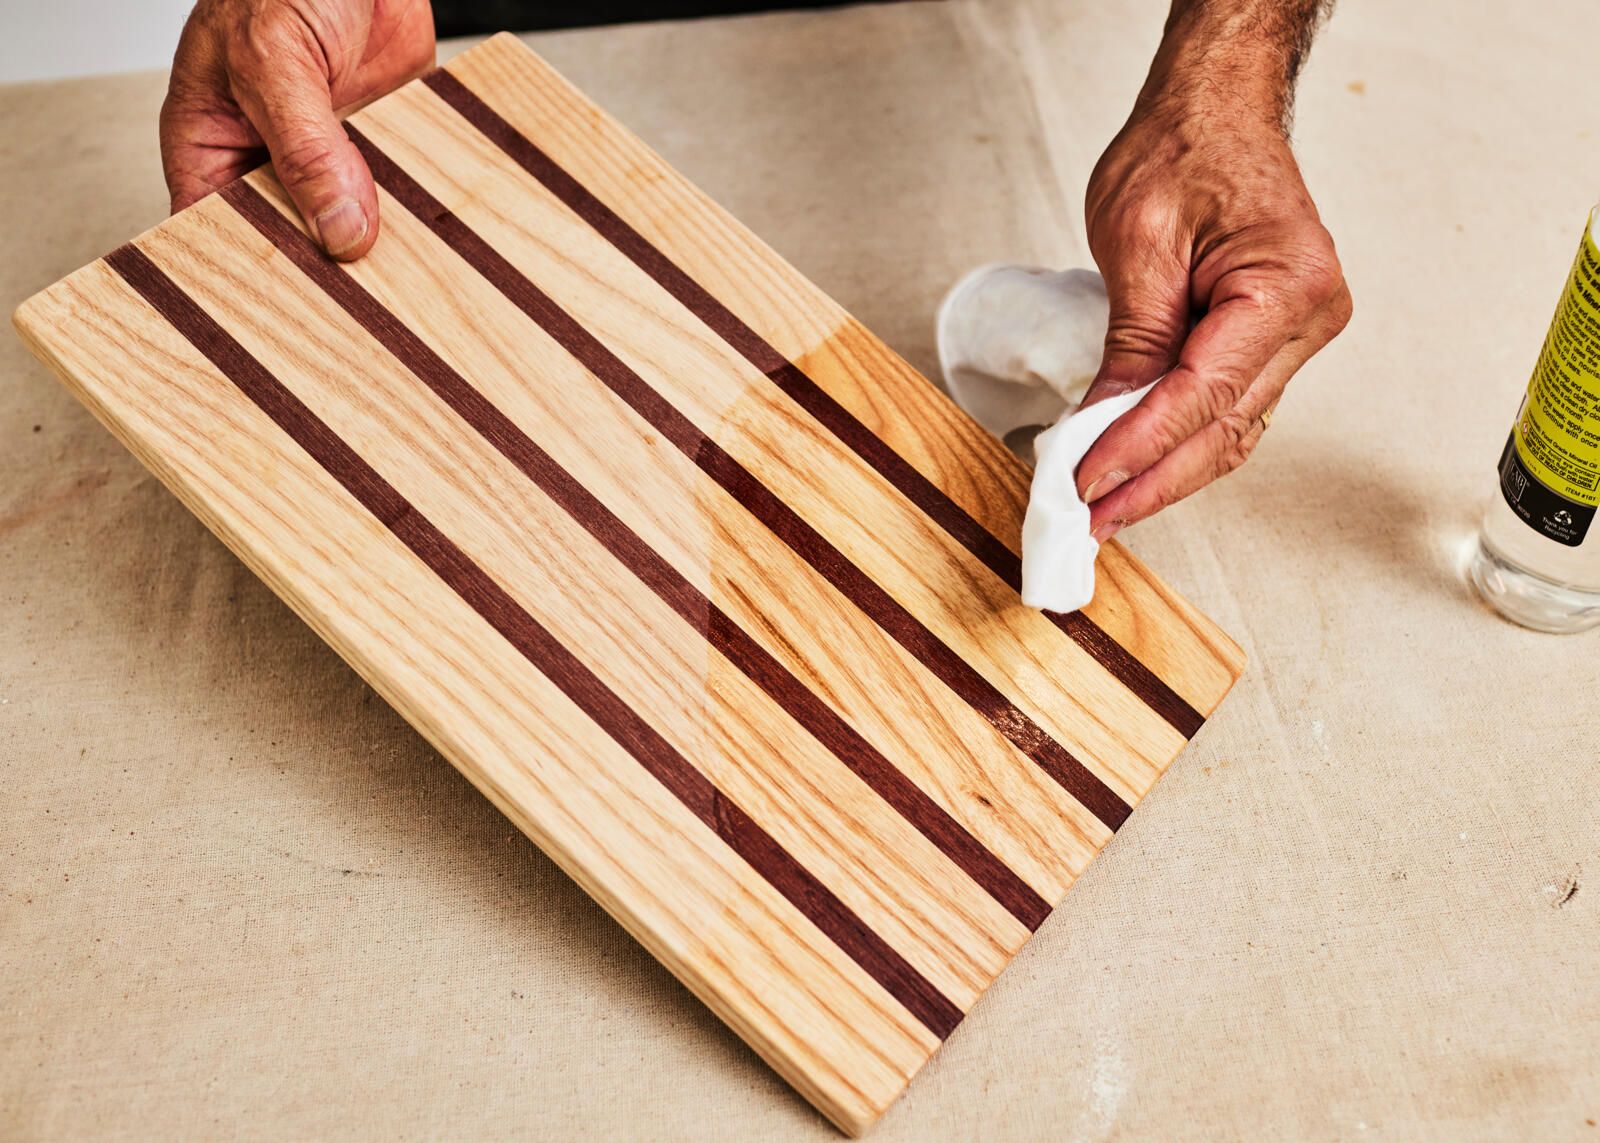 Cuál es la mejor madera para una tabla de cortar?